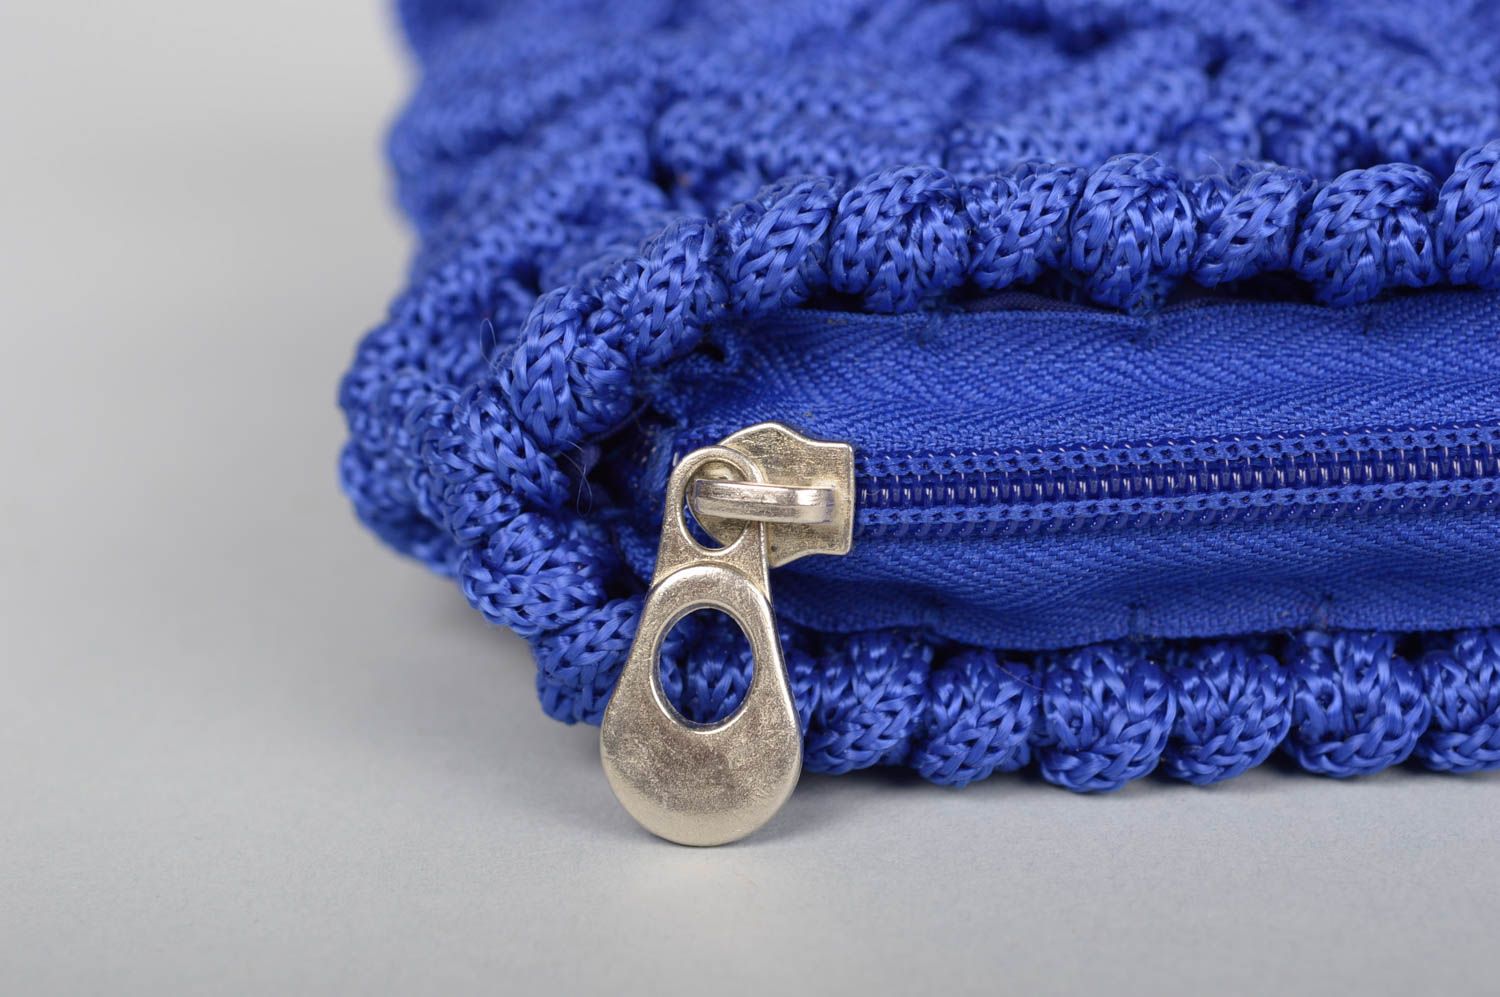 Сумка ручной работы сумочка клатч женская сумка синяя авторская красивая фото 4